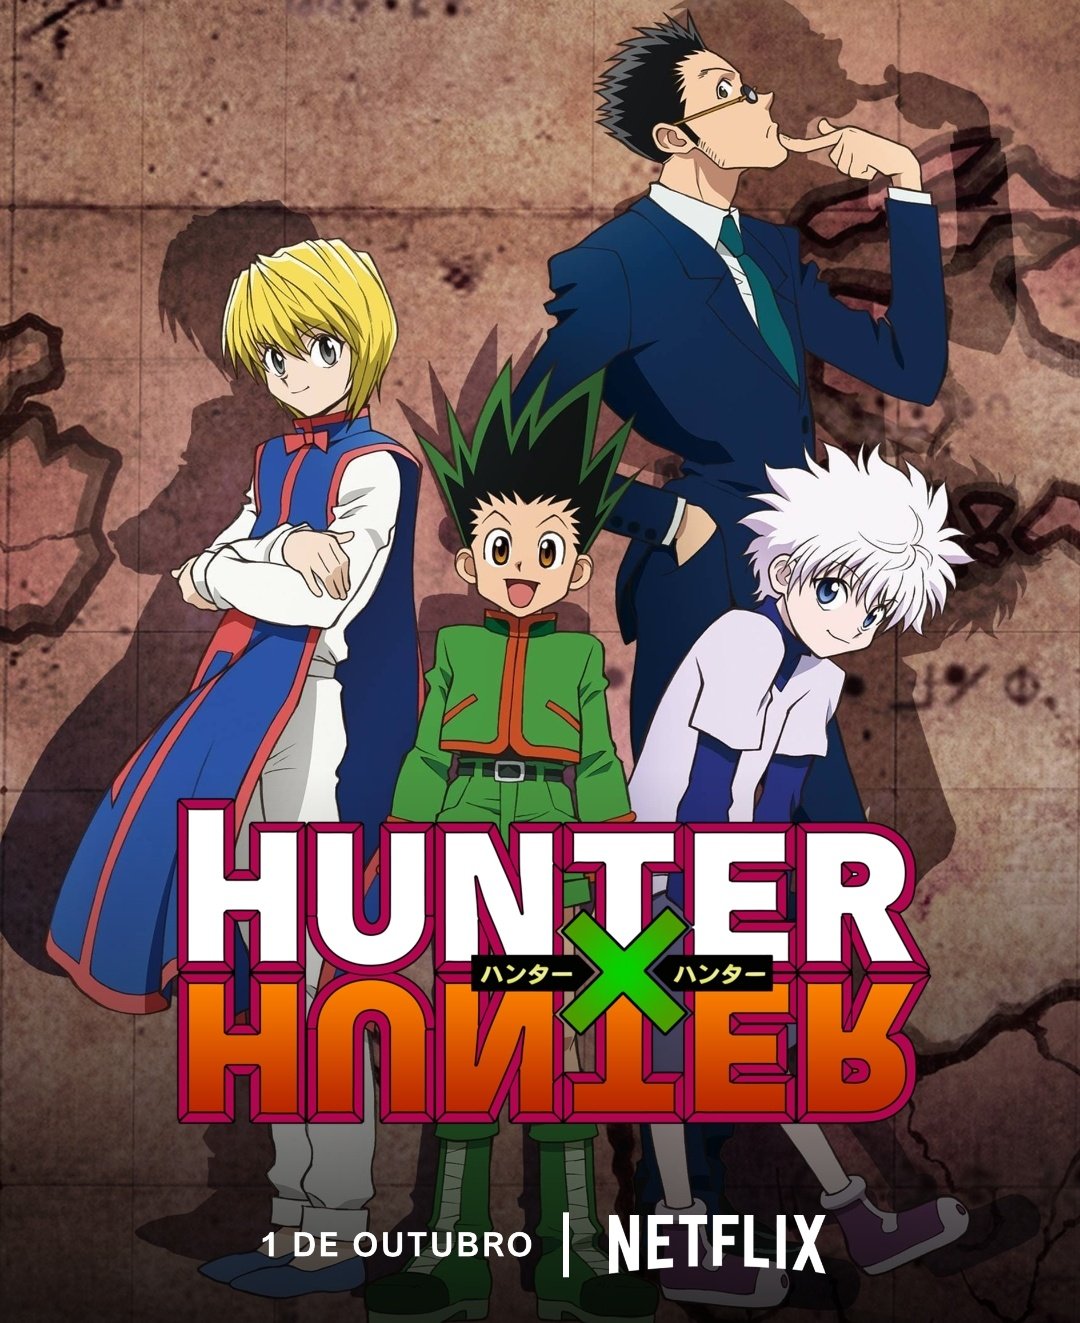 Anime Hunter x Hunter vai ser retirado do catálogo da Netflix